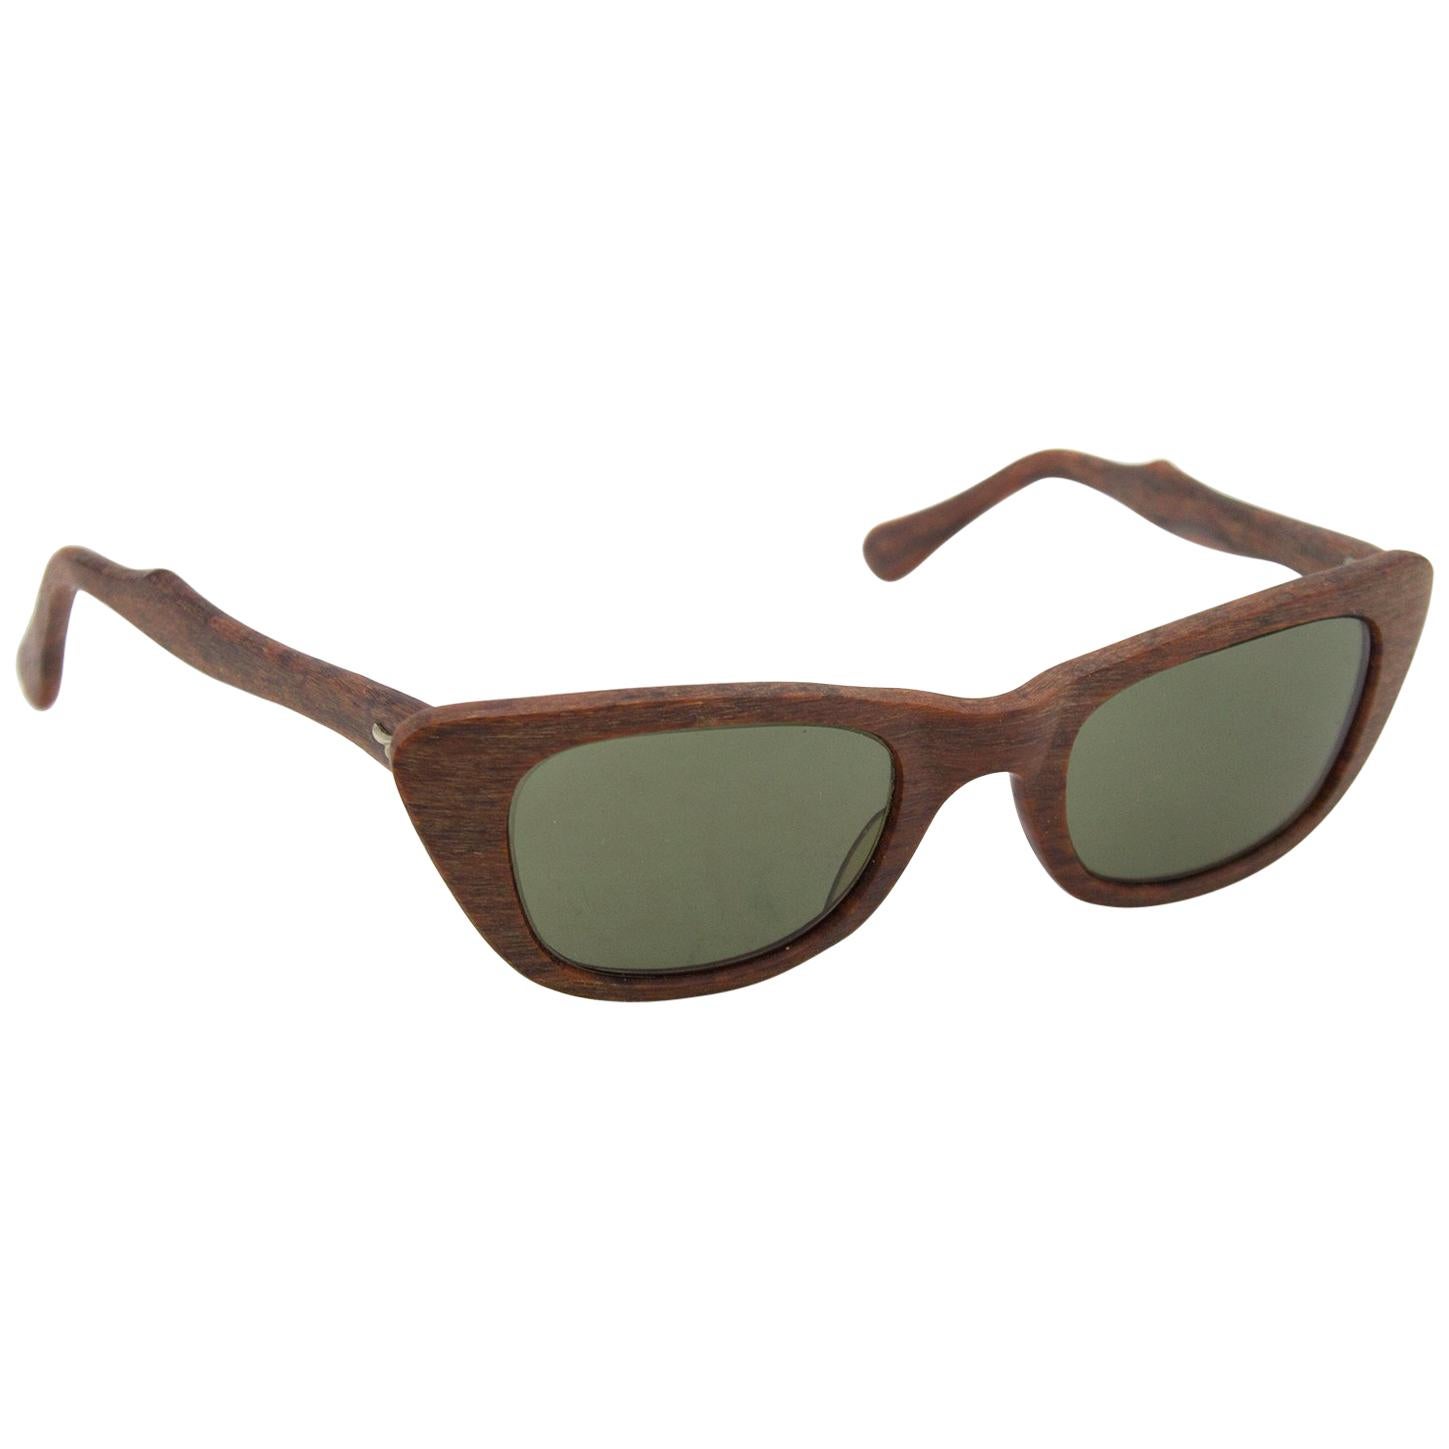 1950s Martin Wells Faux Wood Sunglasses